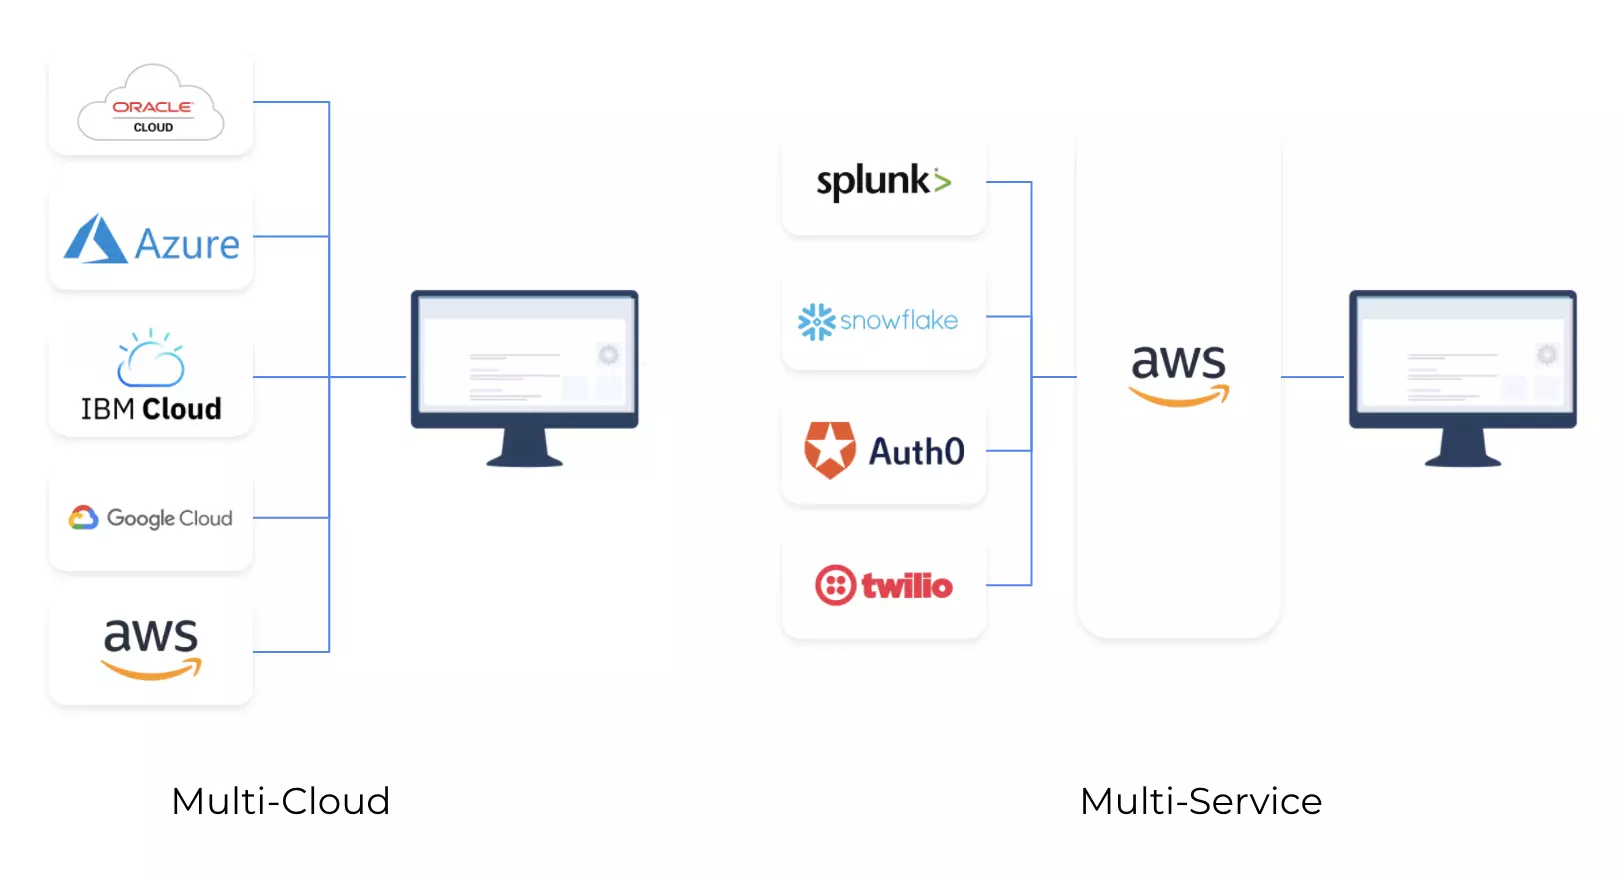 Multi-Cloud Versus Multi-Service